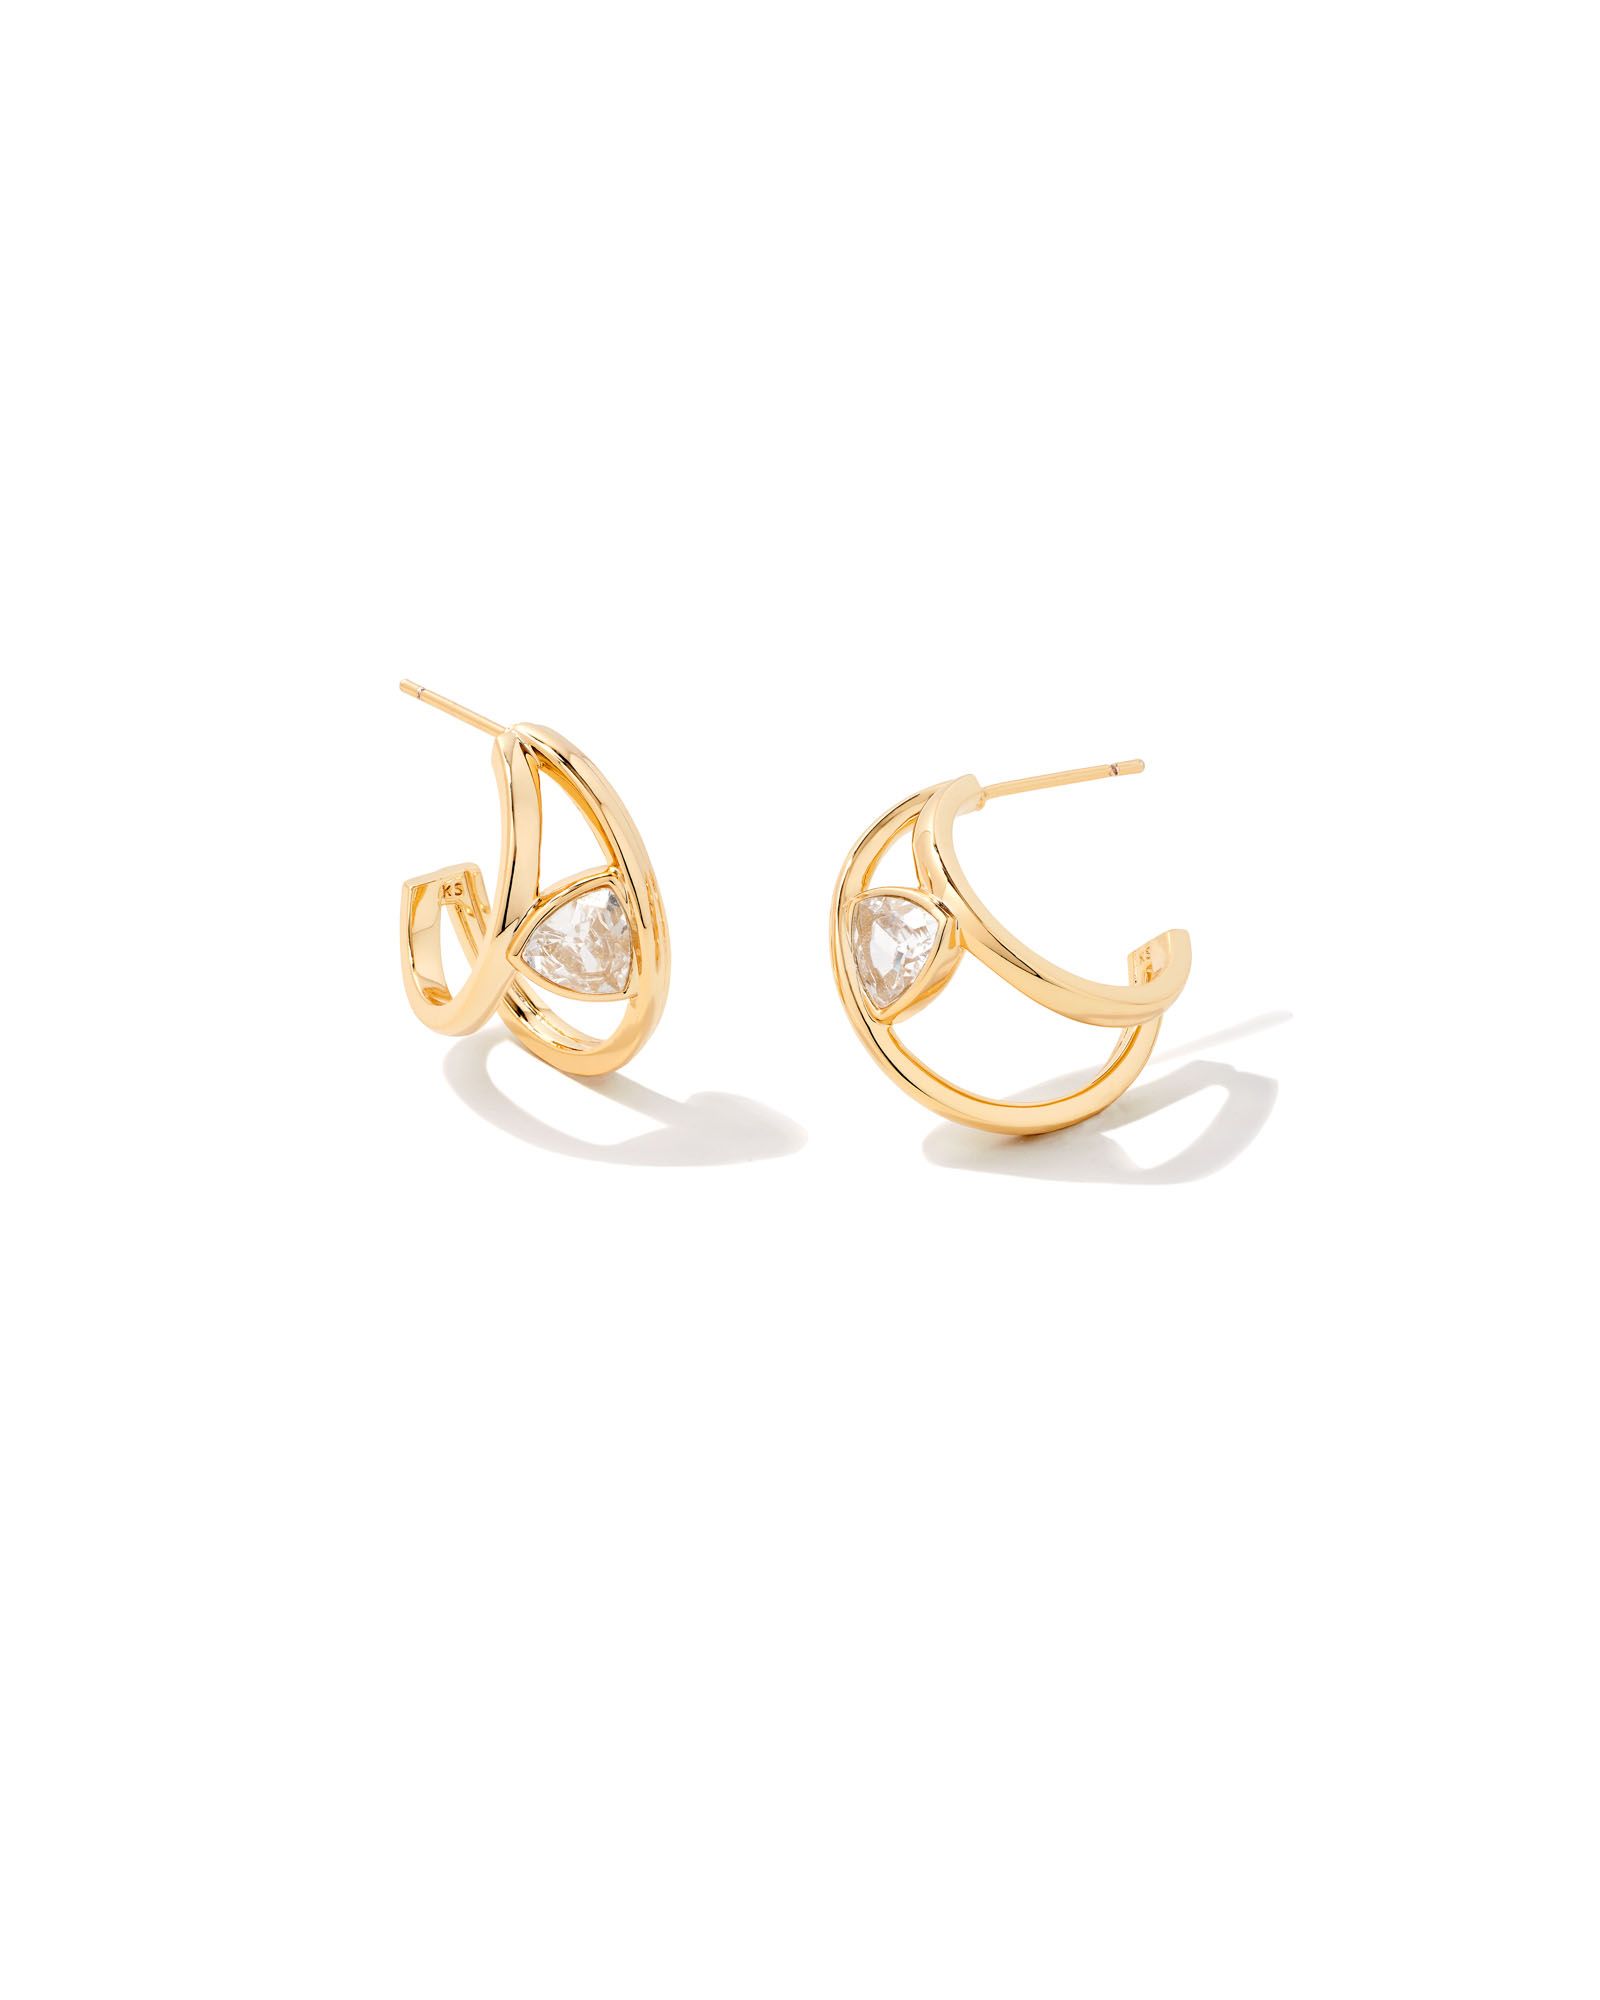 Arden Gold Huggie Earrings in White Crystal | Kendra Scott | Kendra Scott